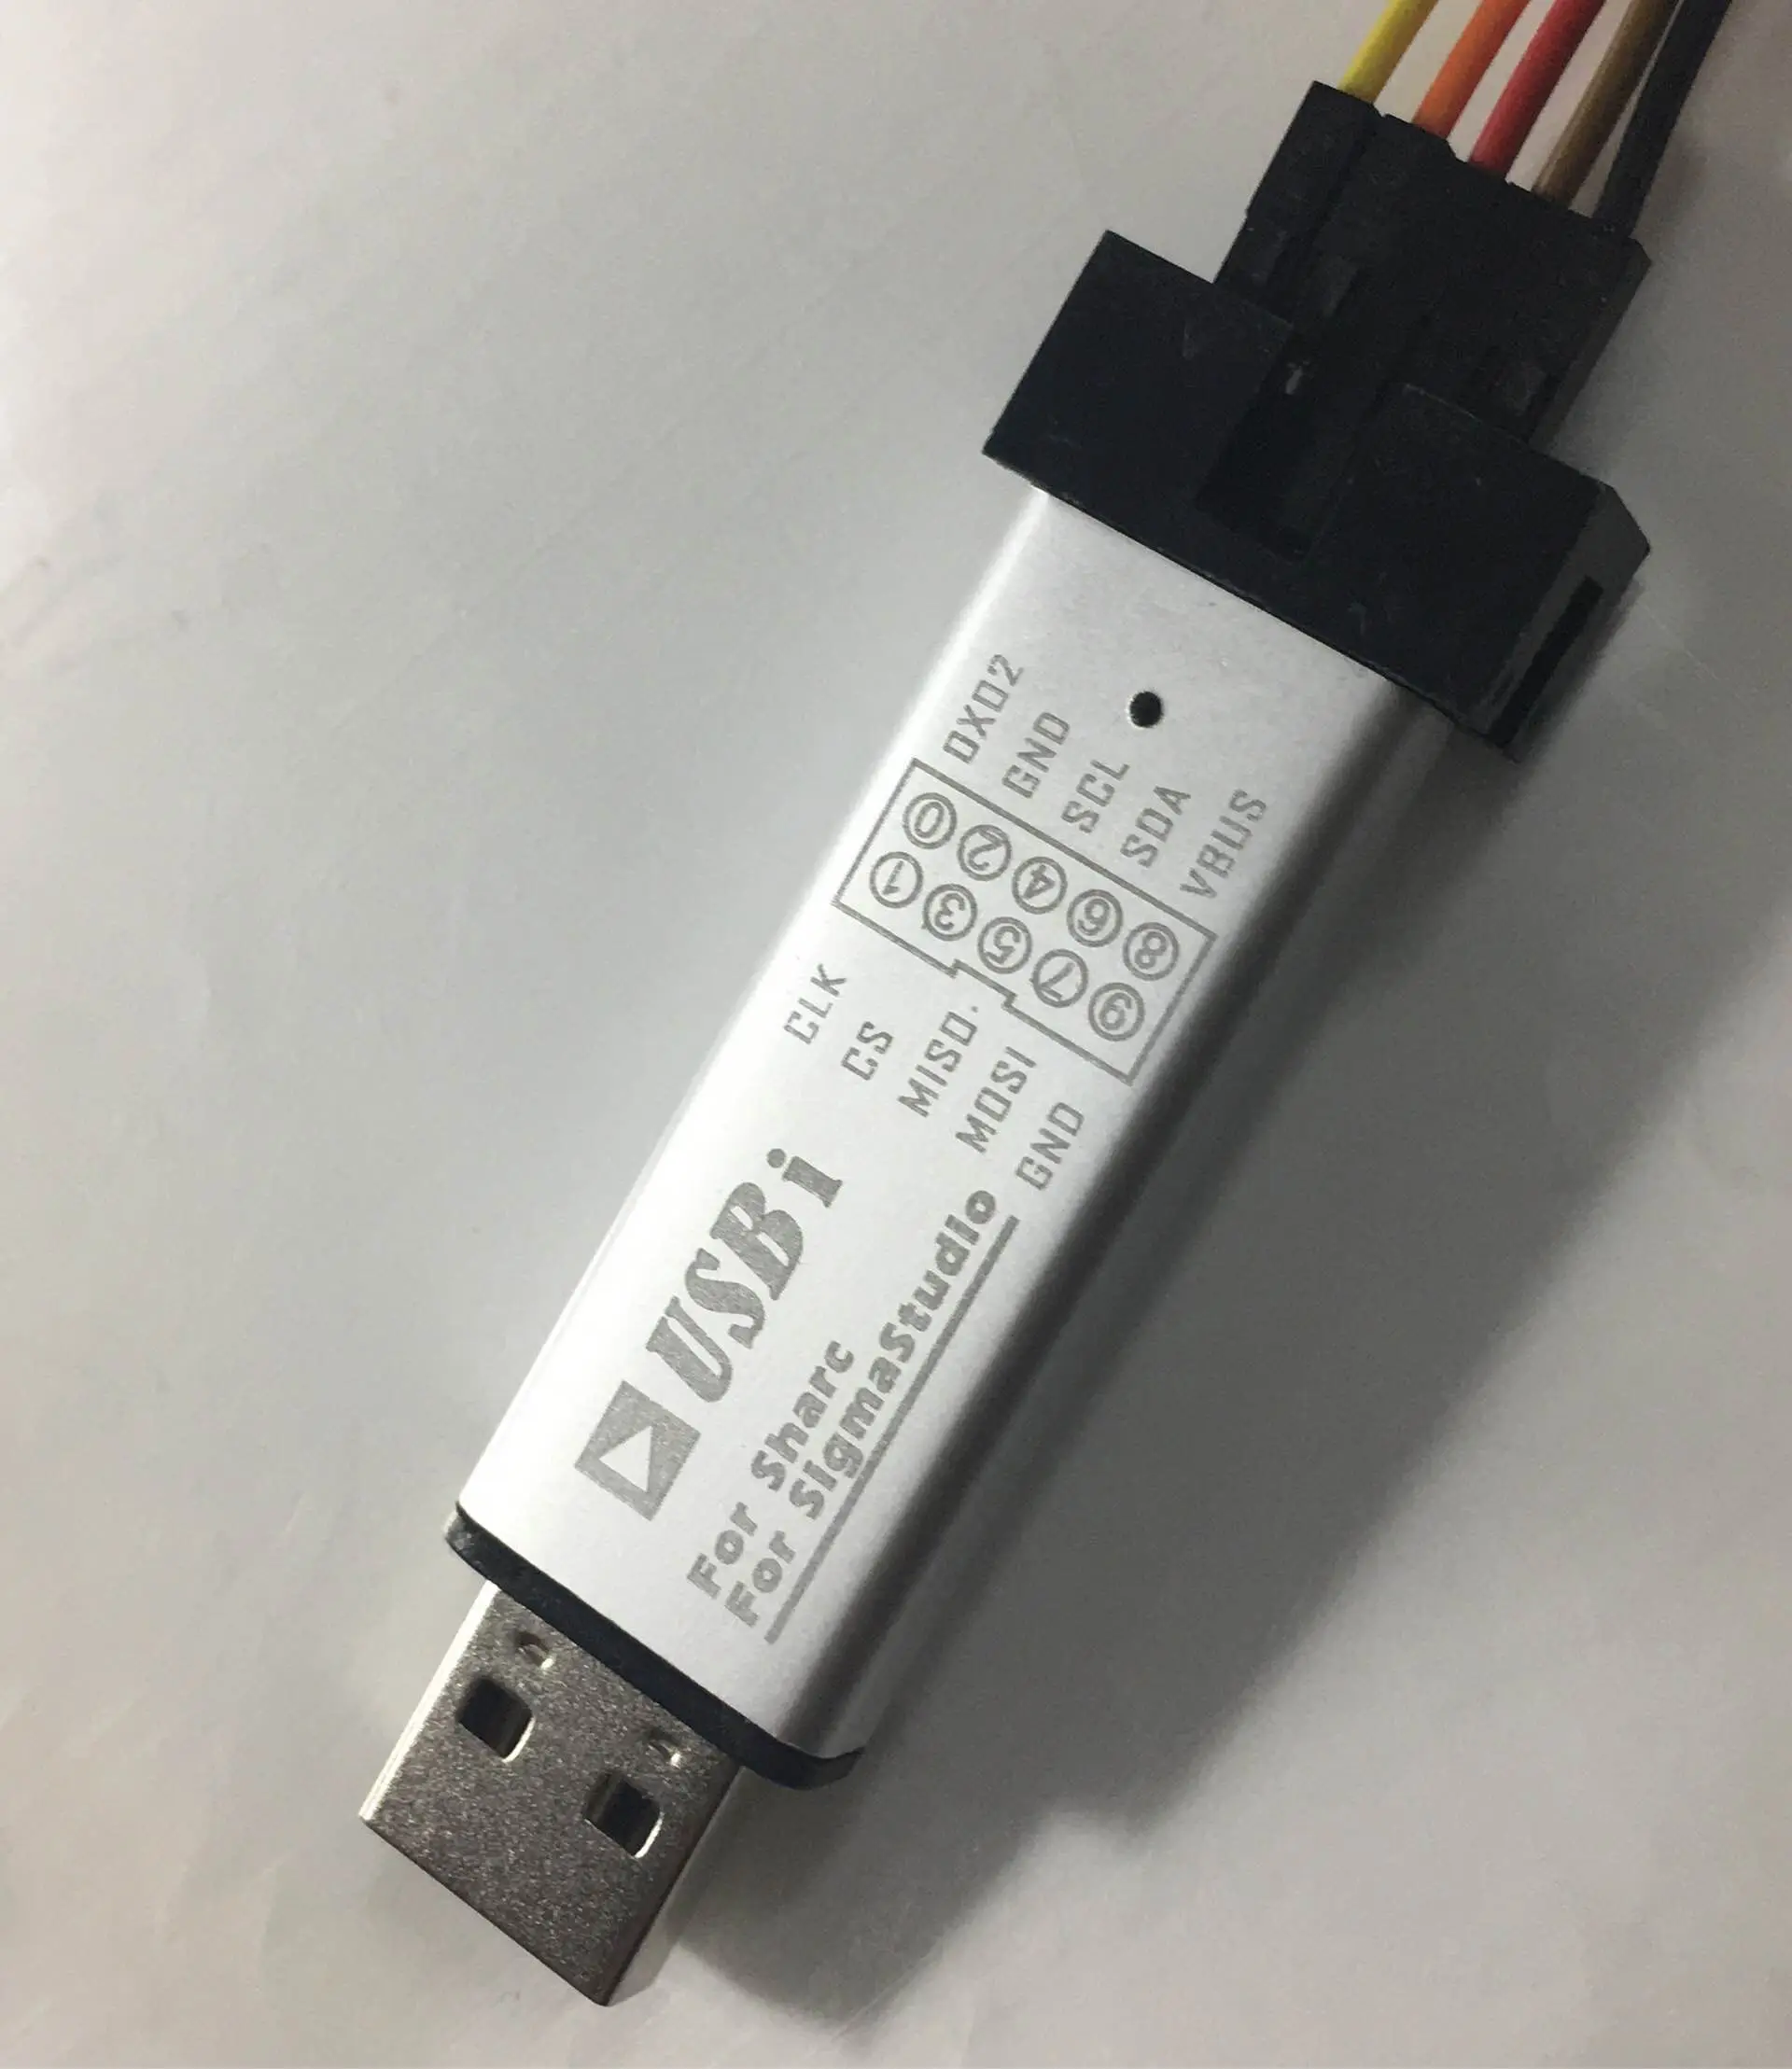 USBi/SIGMASTUDIO Emulator/burner/EVAL-ADUSB2EBUZ